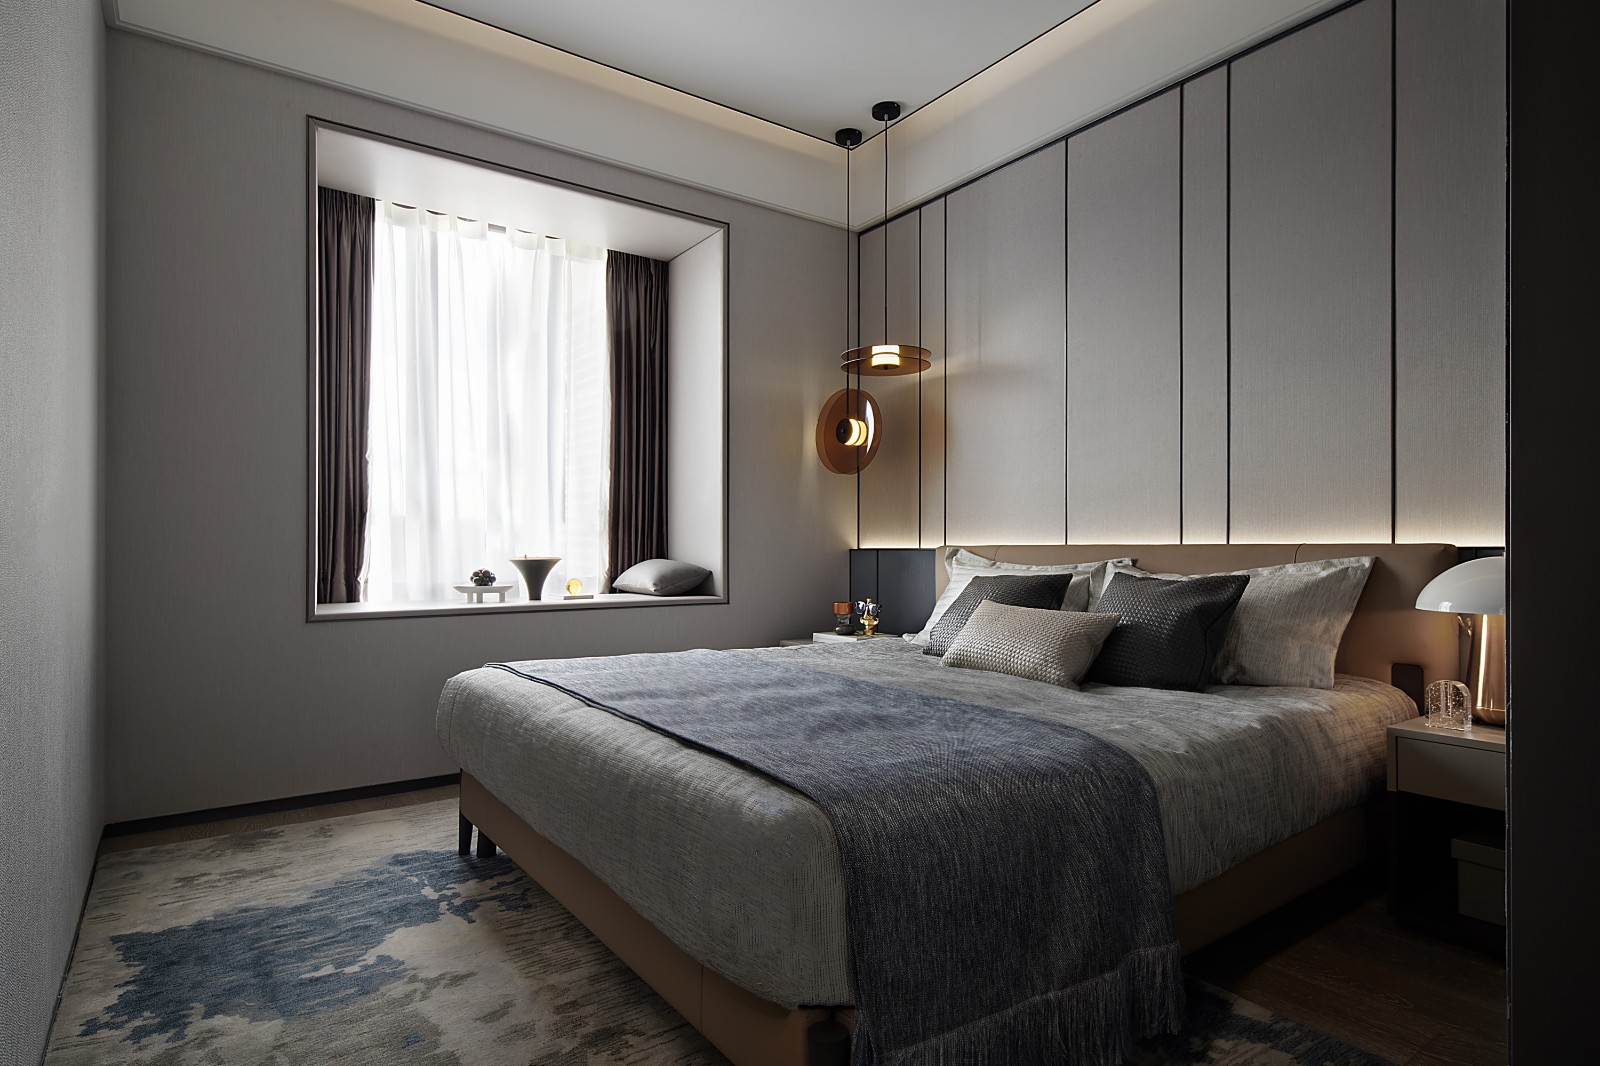 侧卧具有素雅简约之美，床头垂吊灯具为整个卧室带来层次灵动的感觉。